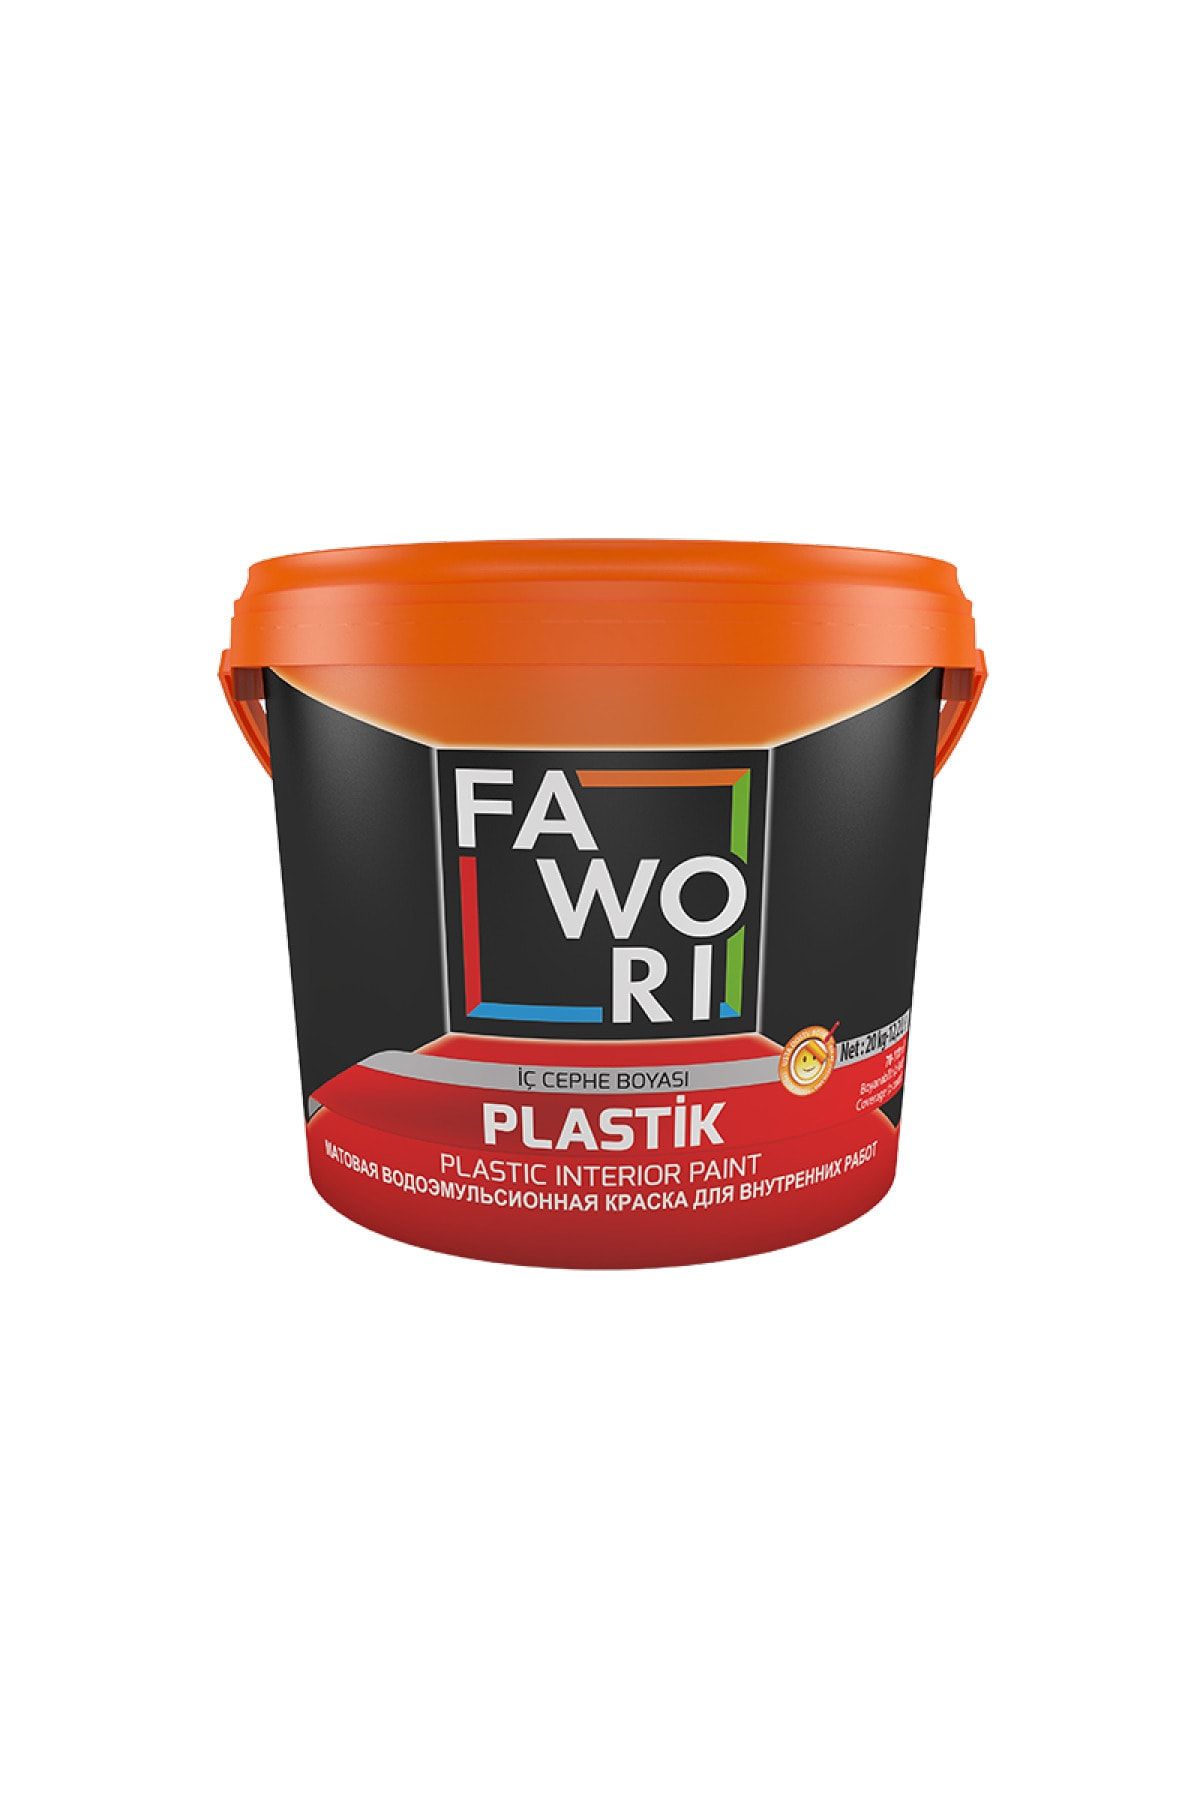 Fawori Plastik İç Cephe Boyası 3,5 Kg. Pastel Pembe